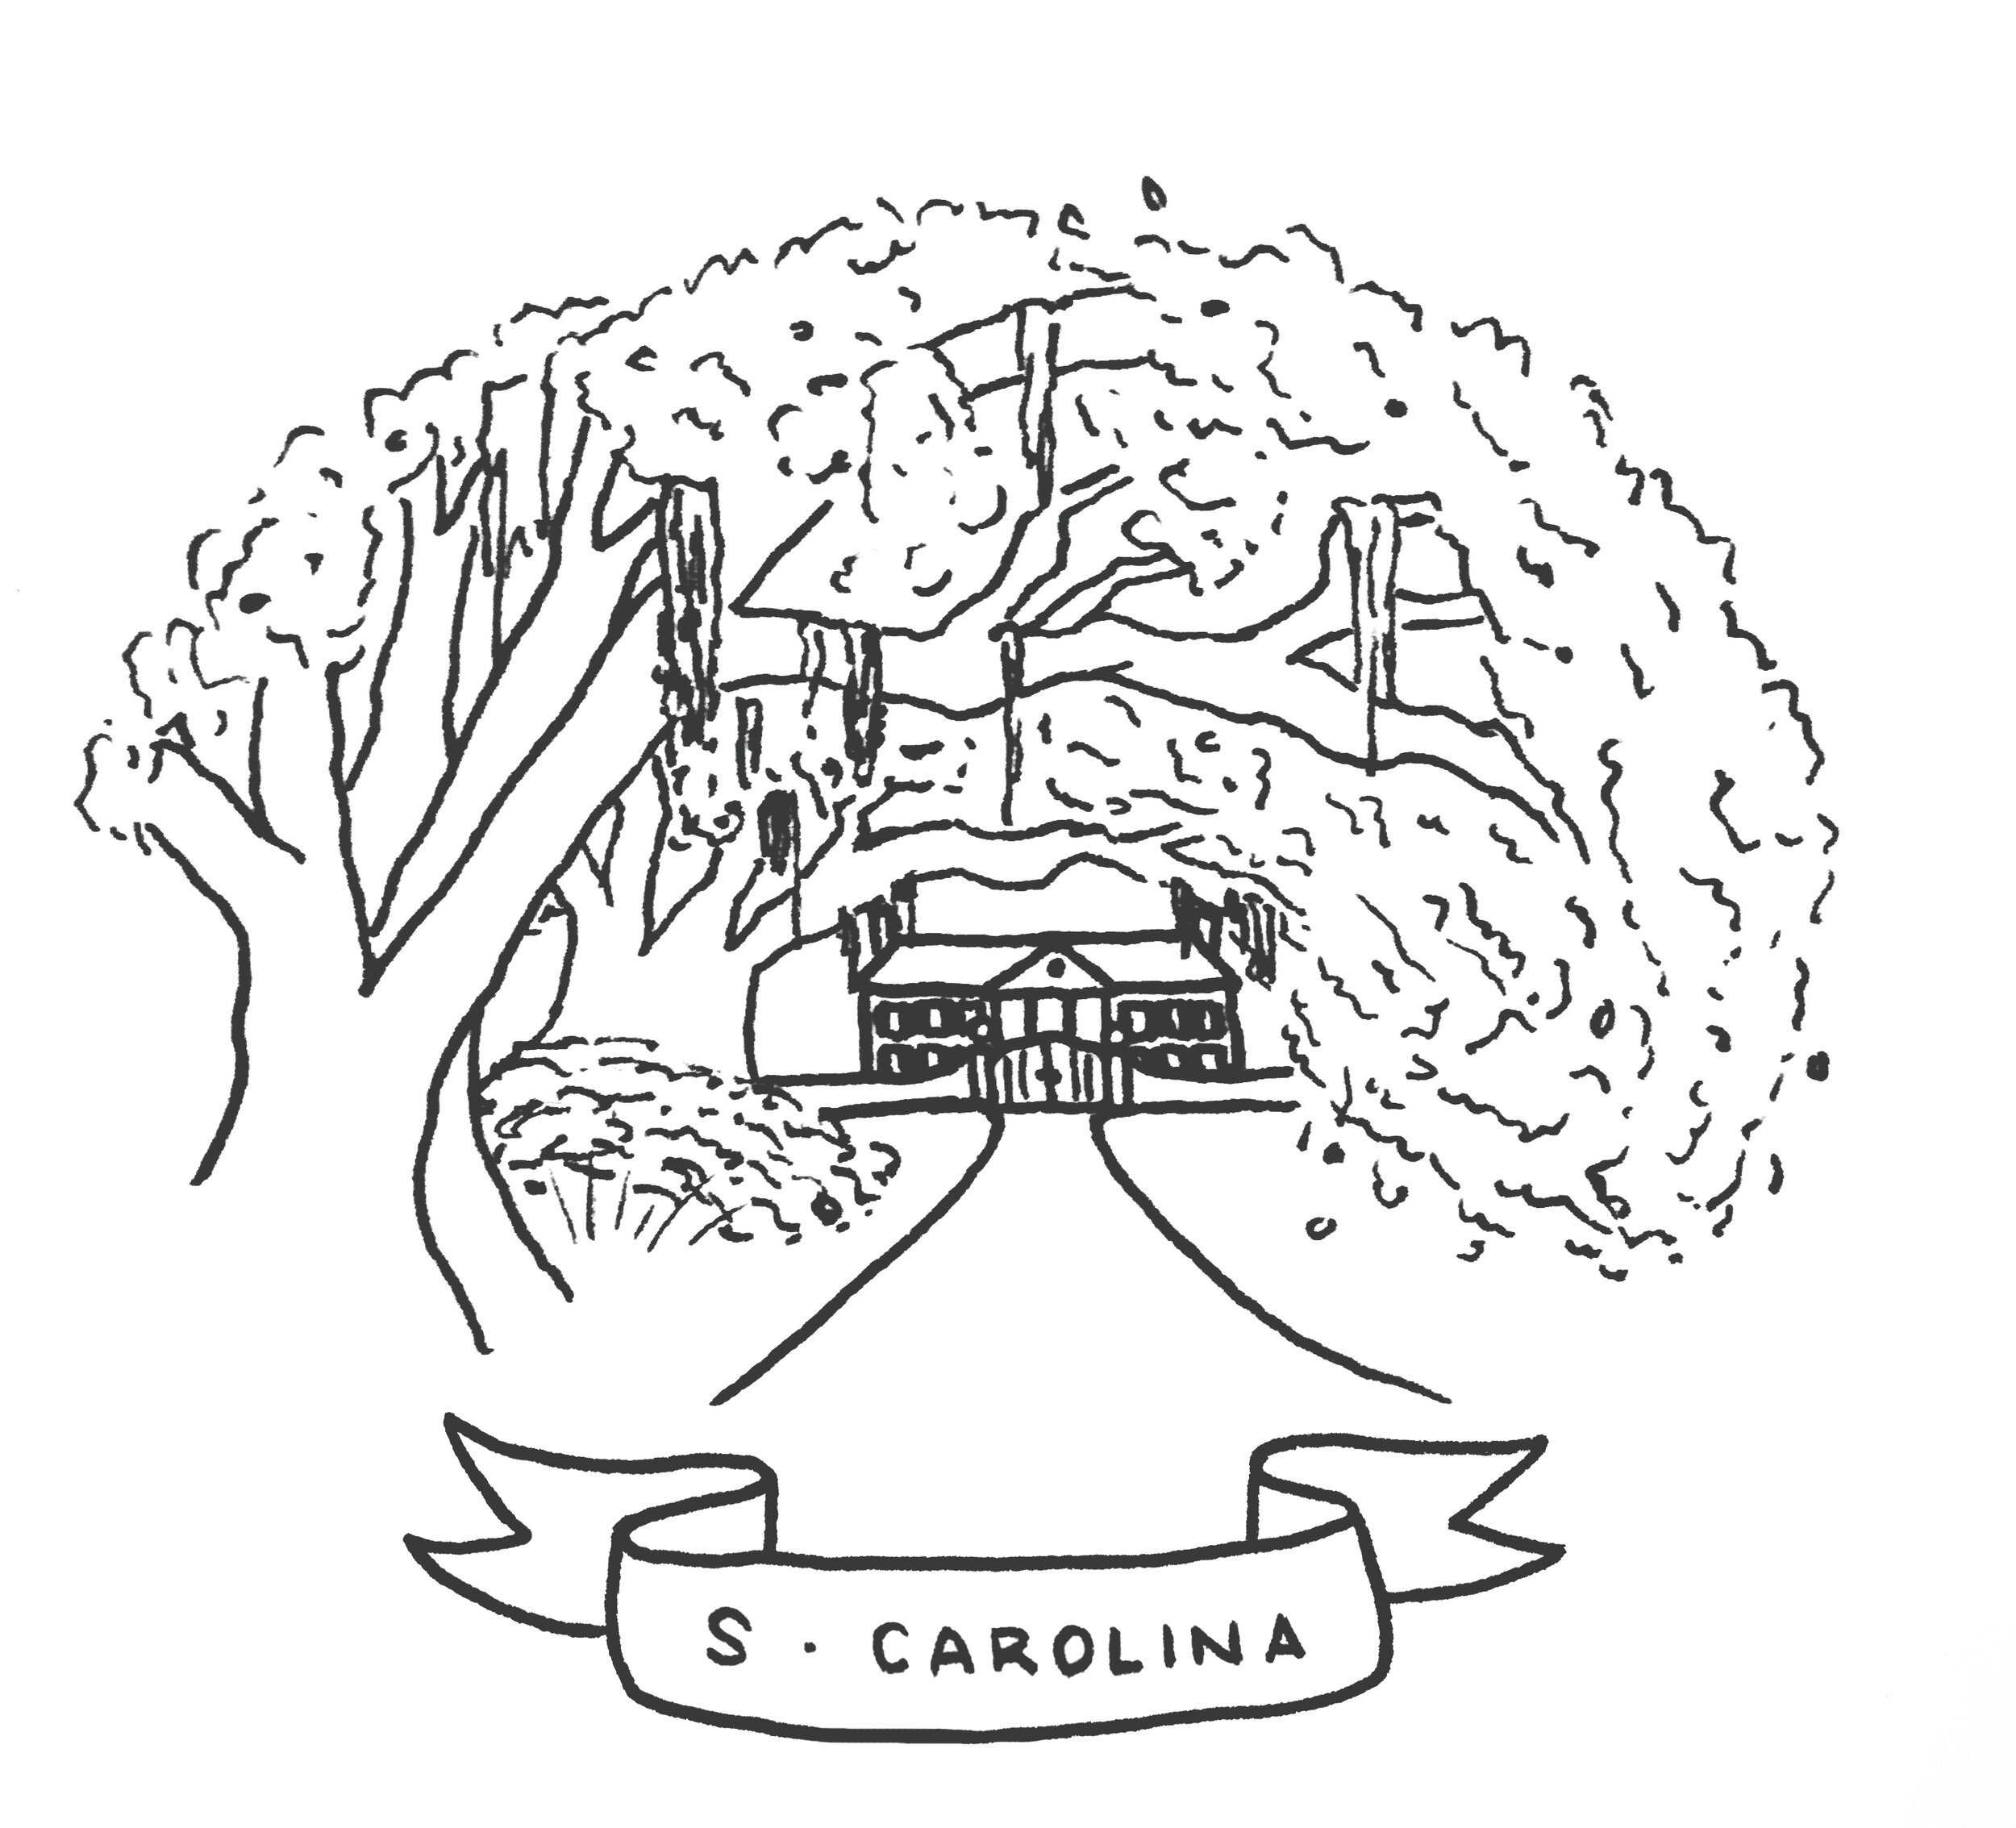 South Carolina Tree version Grey.jpg